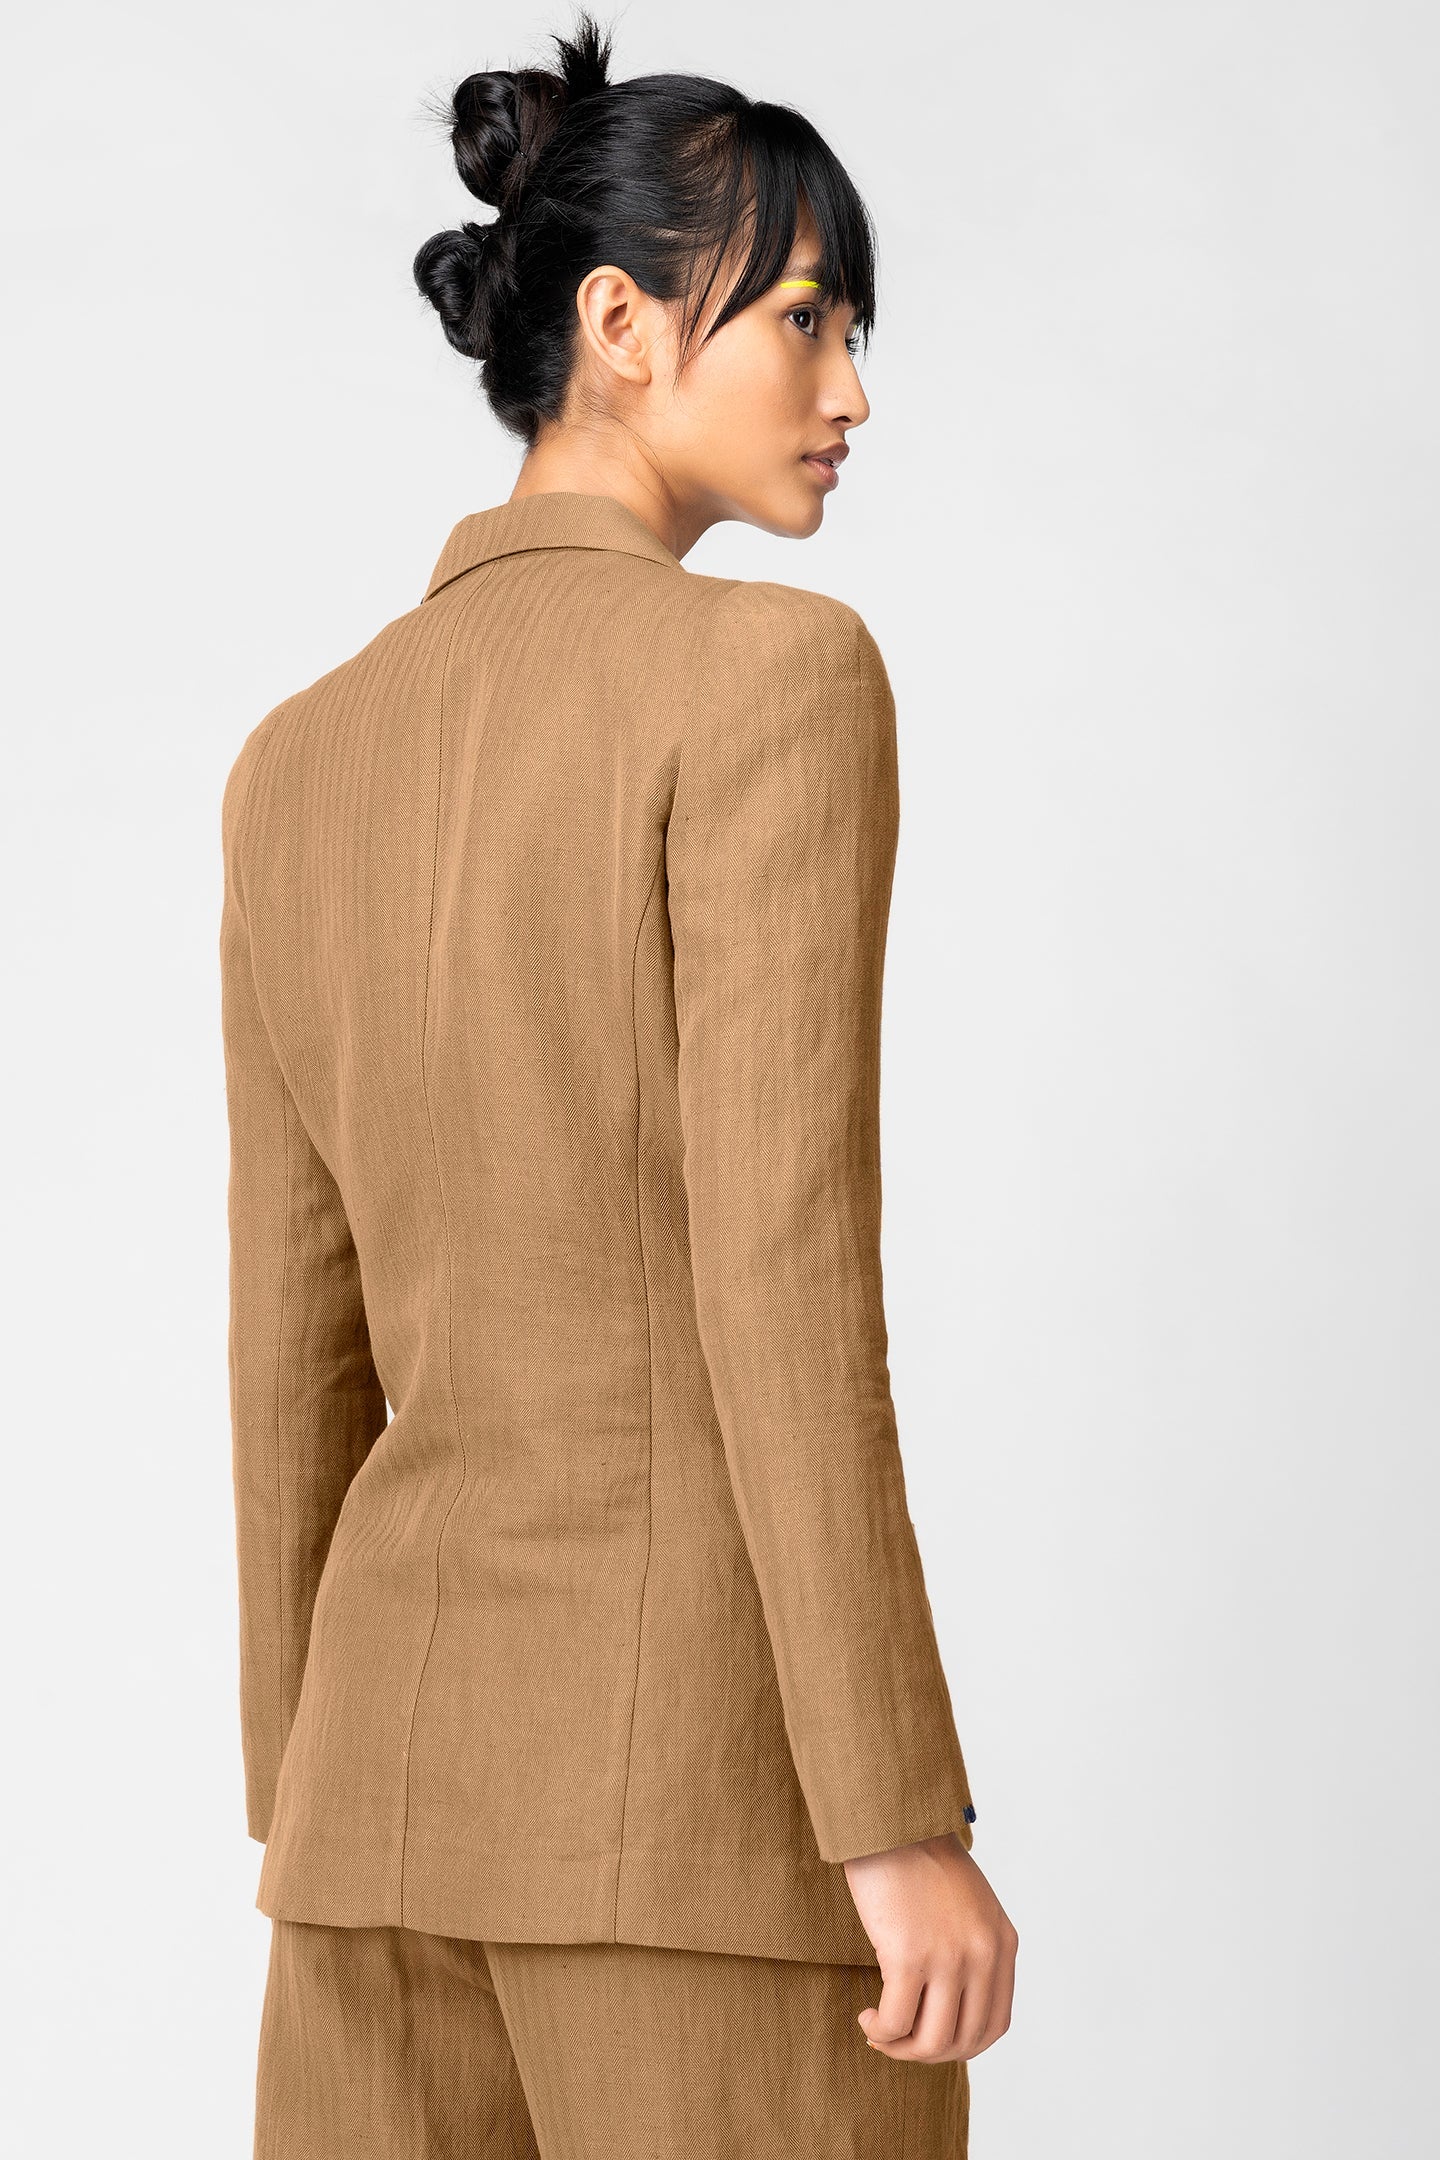 linen-jacket - Genes online store 2020